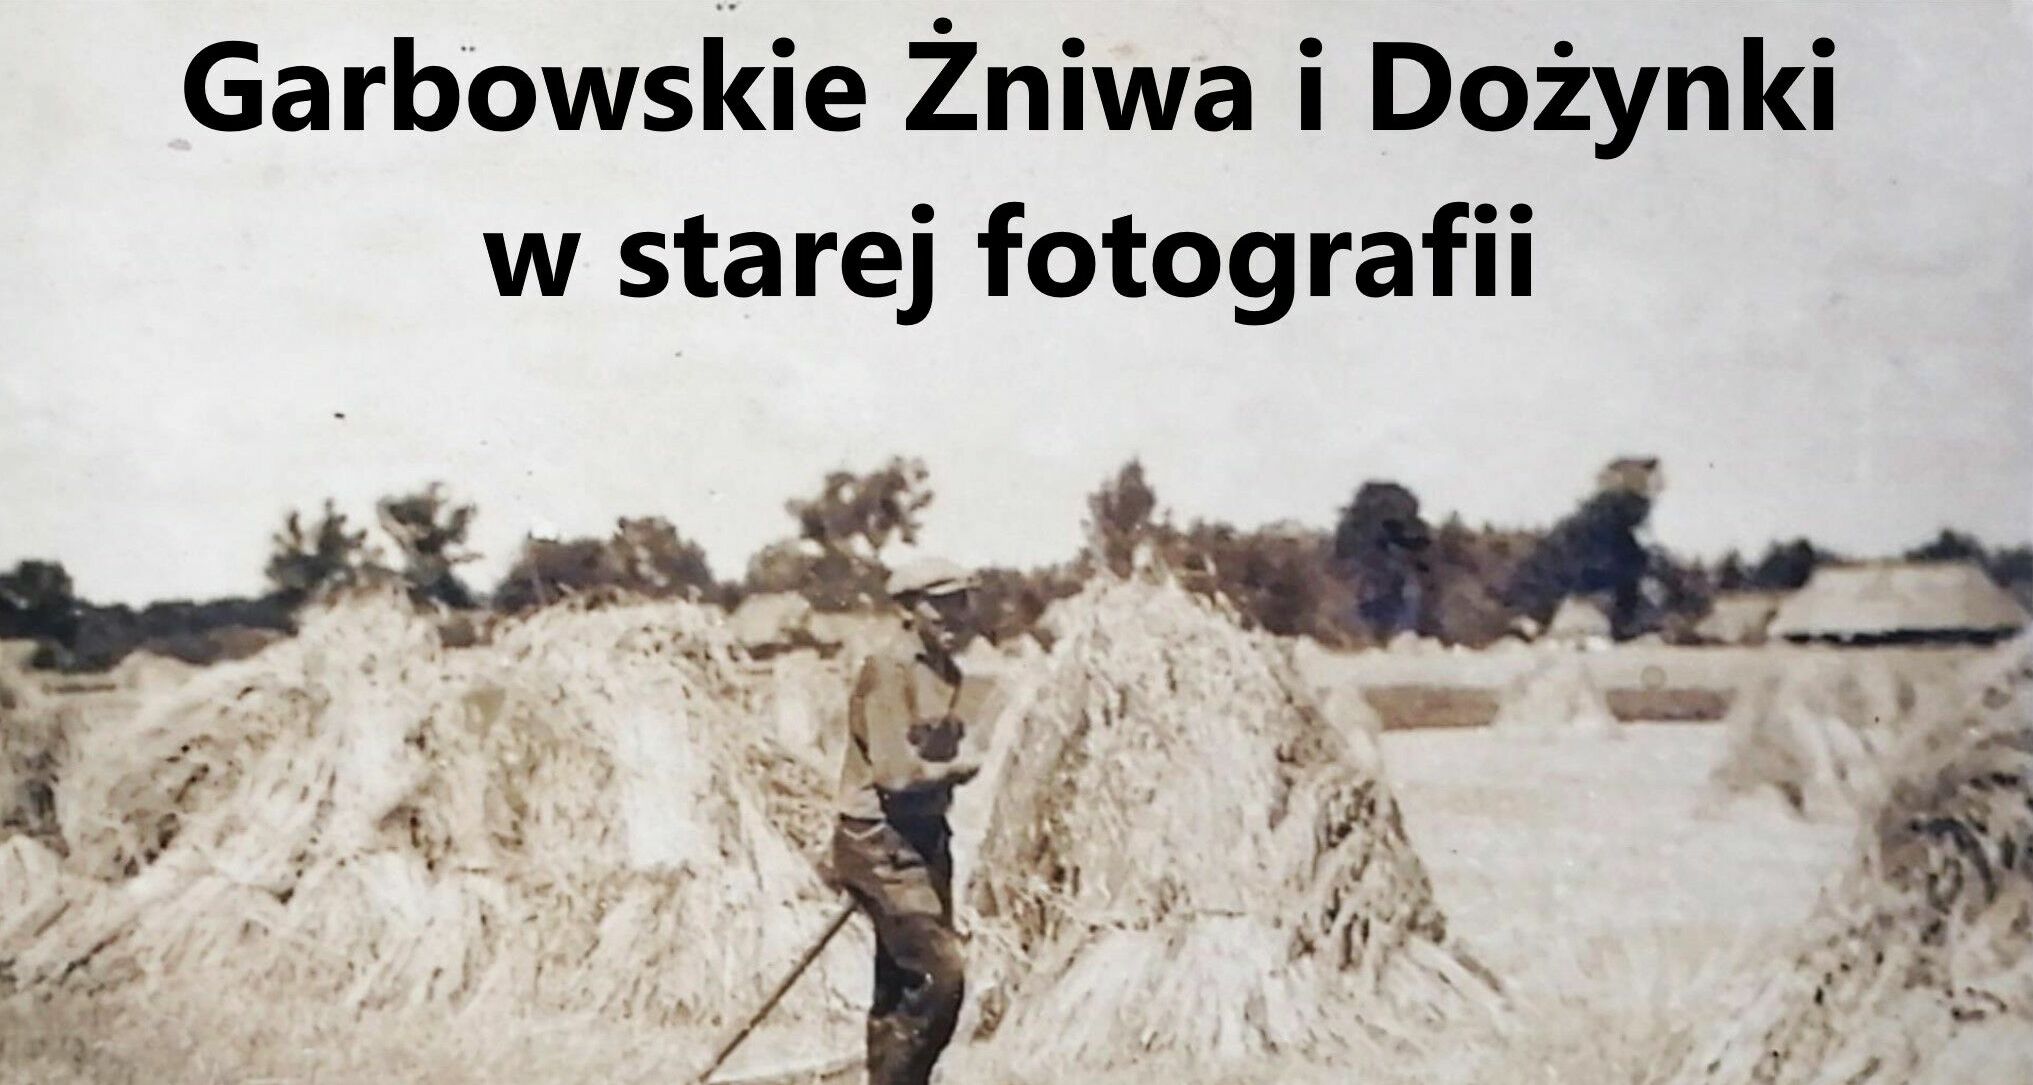 Garbowskie Żniwa i Dożynki w starej fotografii